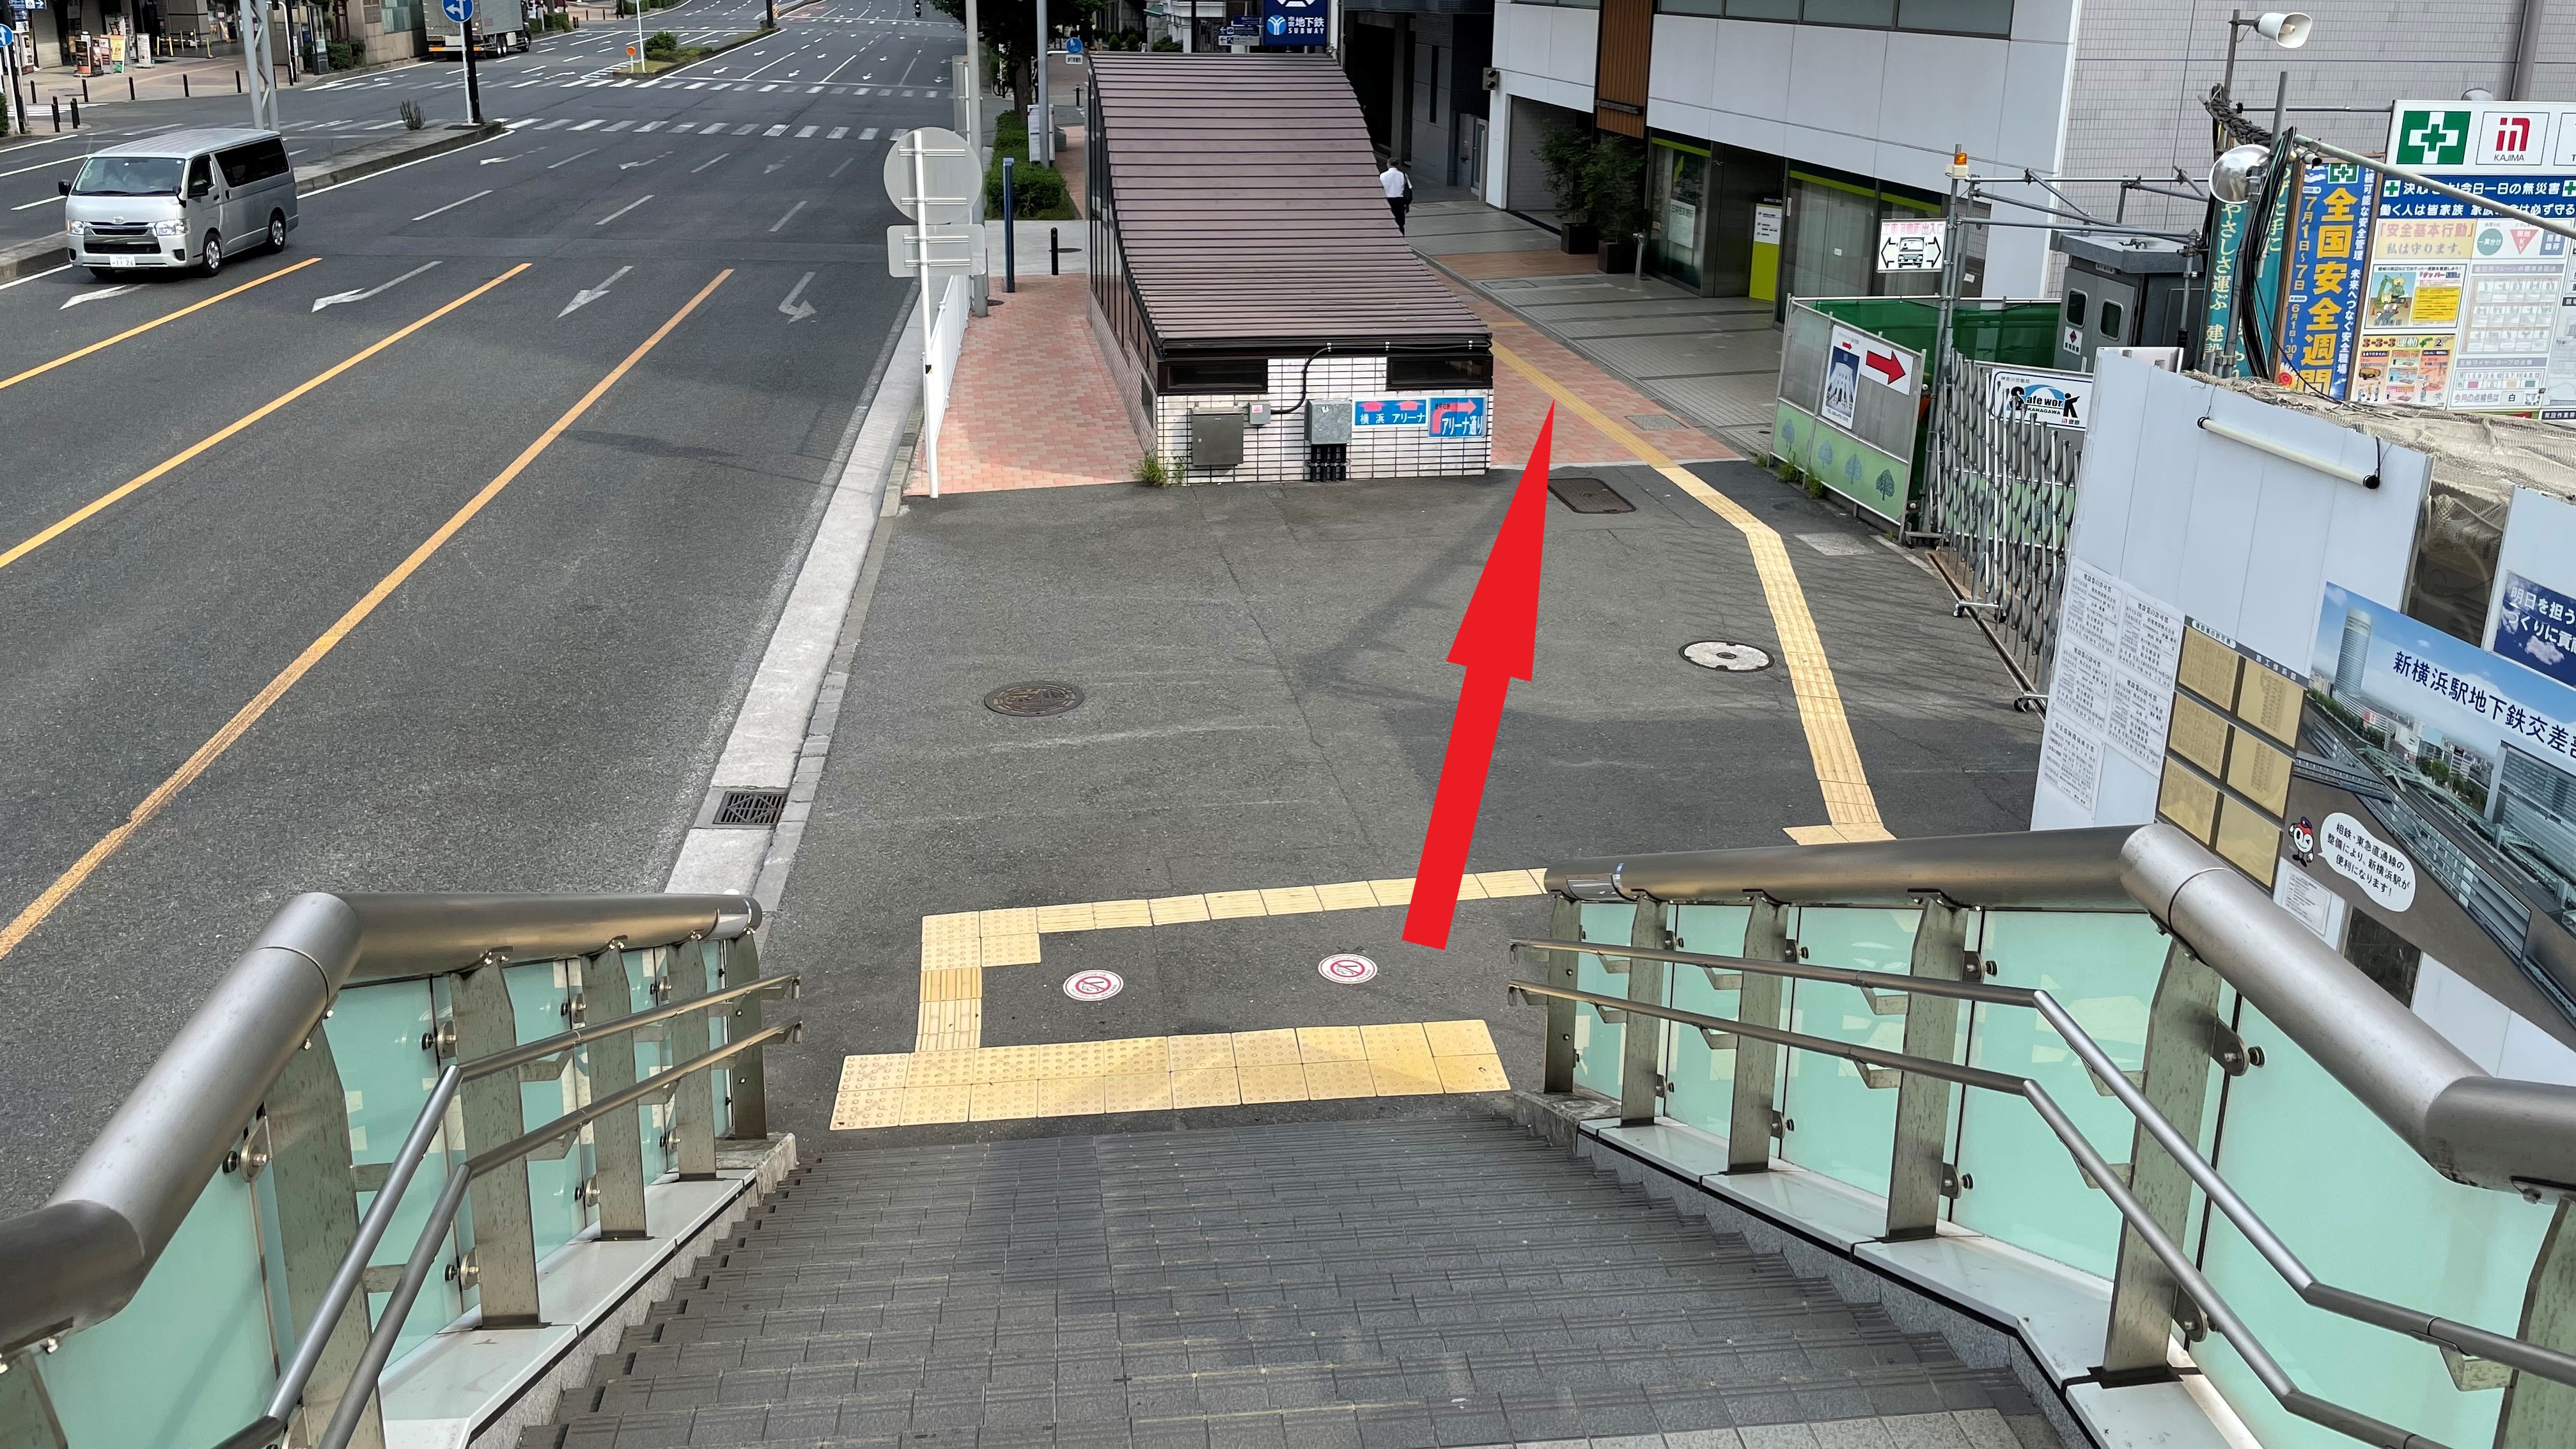 順路⑨階段からは地下鉄の出入り口と三井住友銀行が見えます